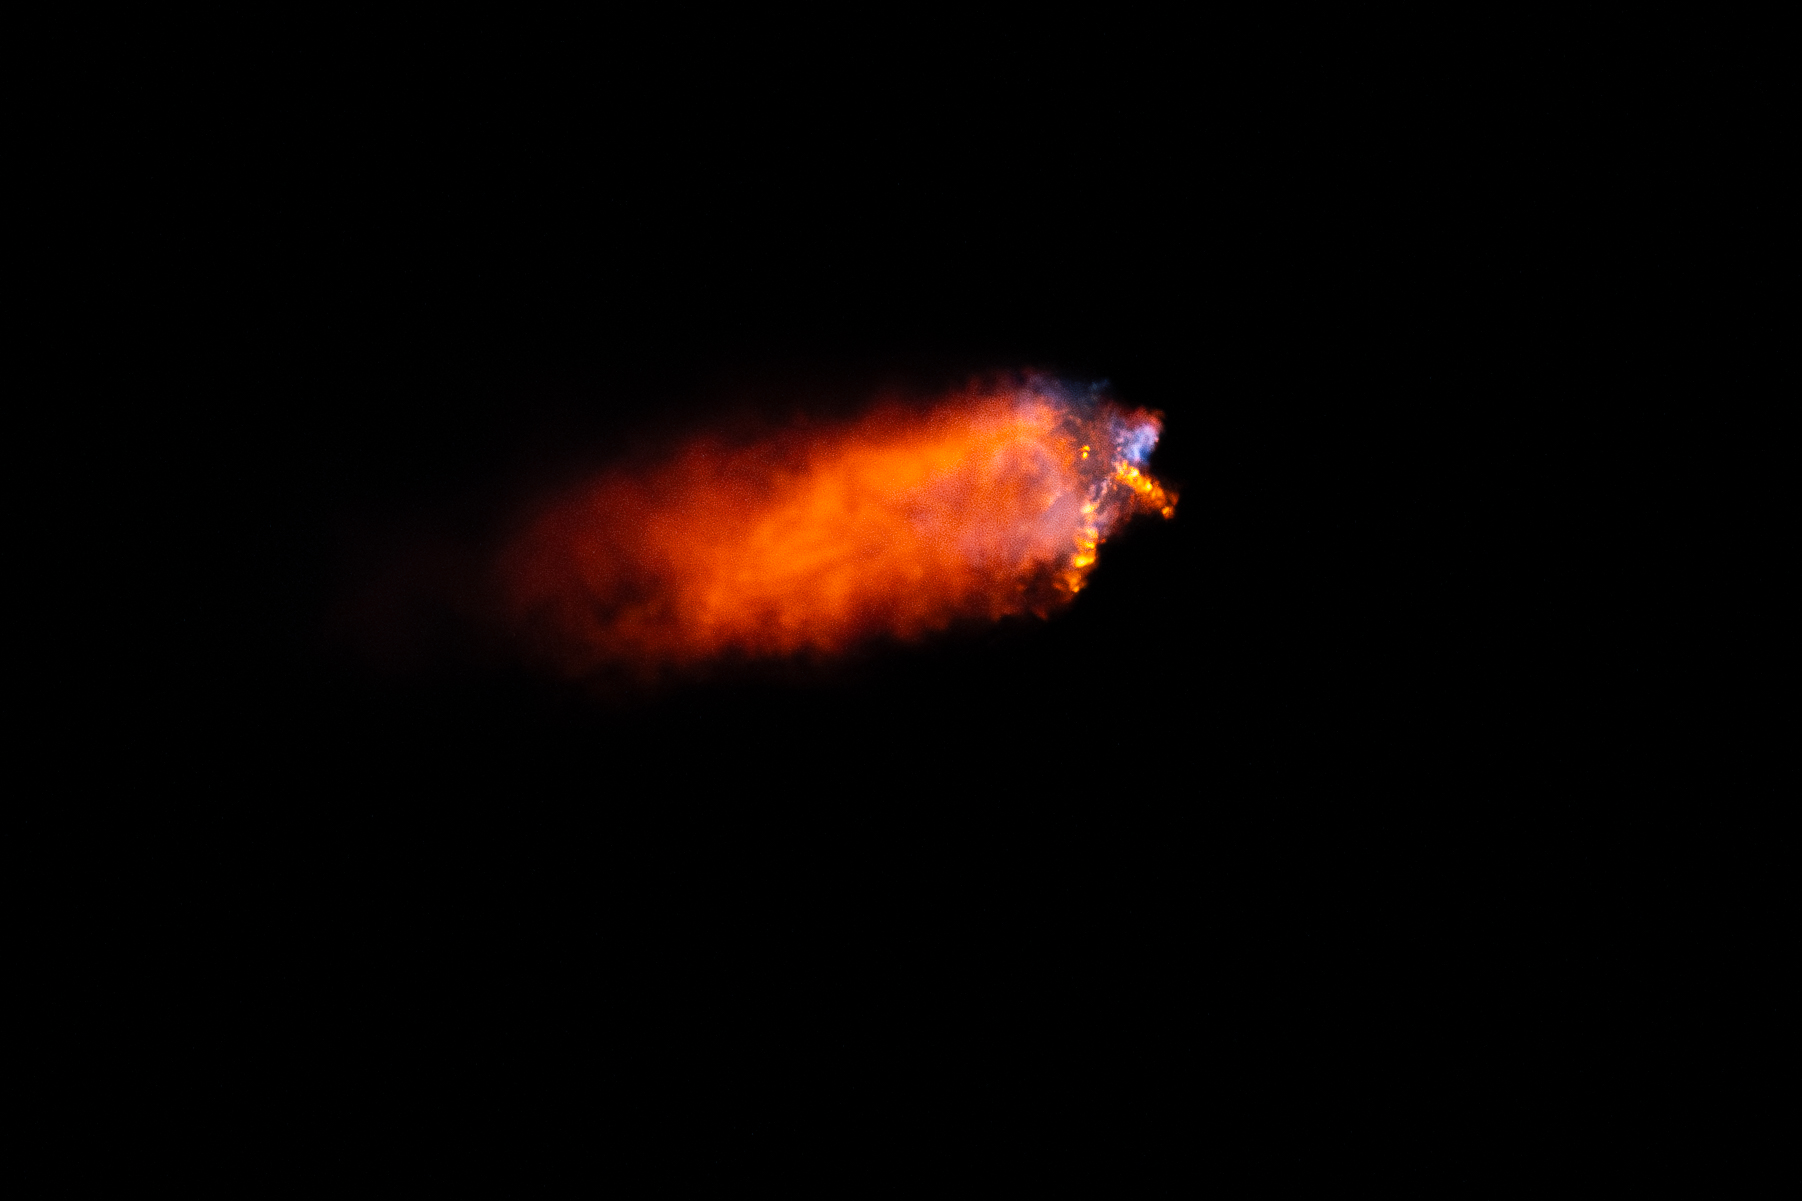 Un cohete se lanza por la noche y deja una brillante columna de fuego a su paso.